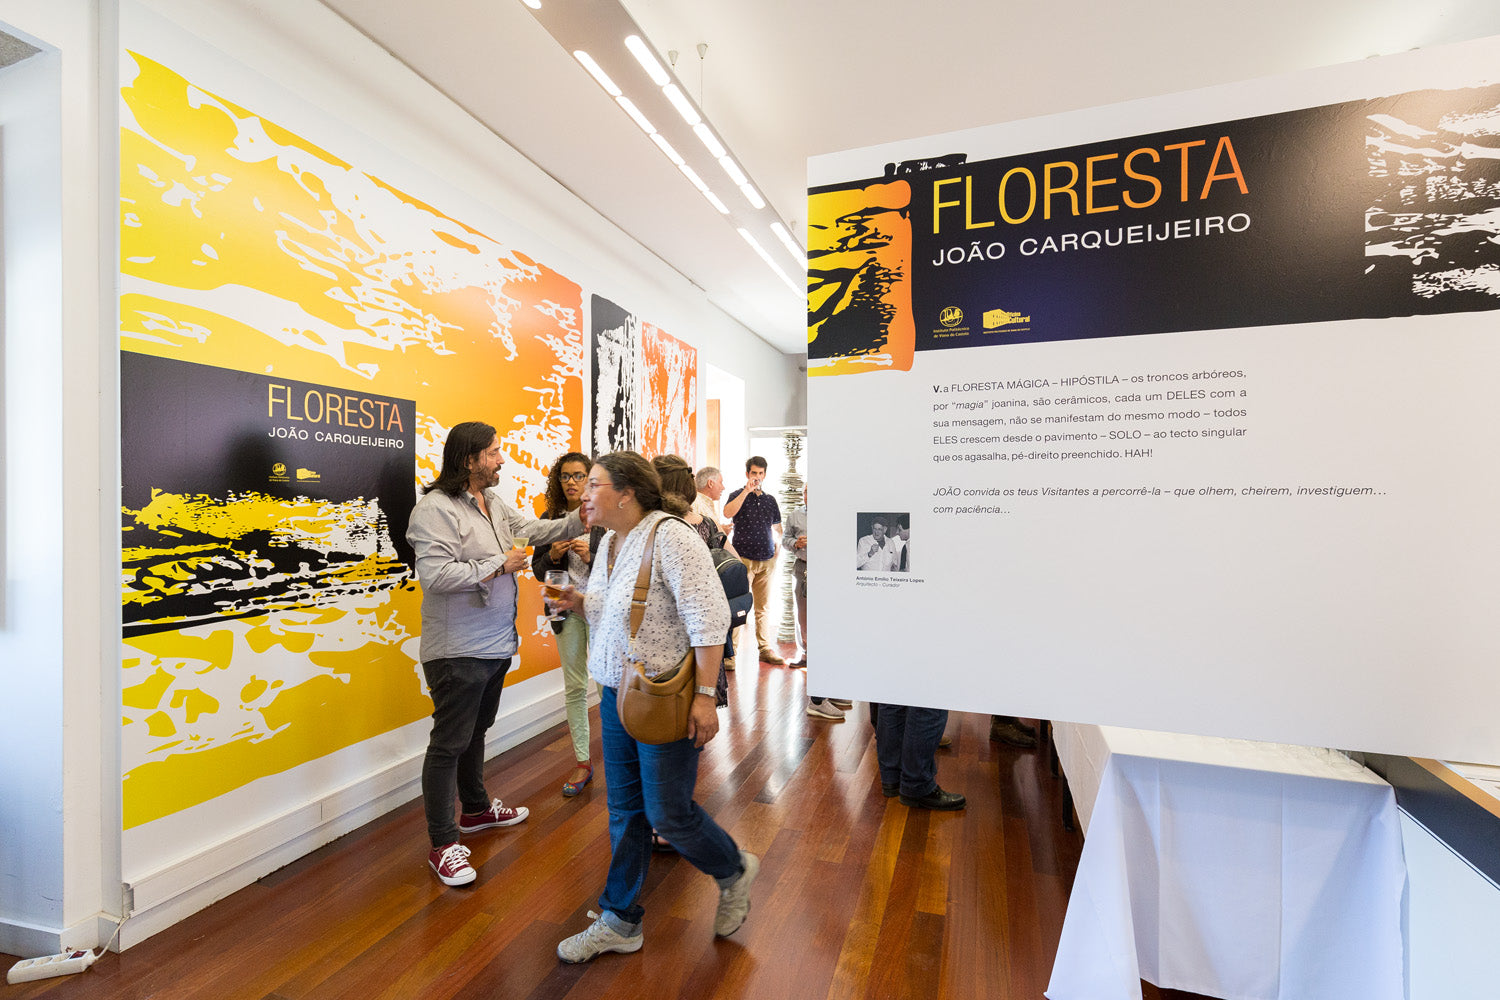 João Carqueijeiro Solo Exhibition 'Floresta' at IPVC